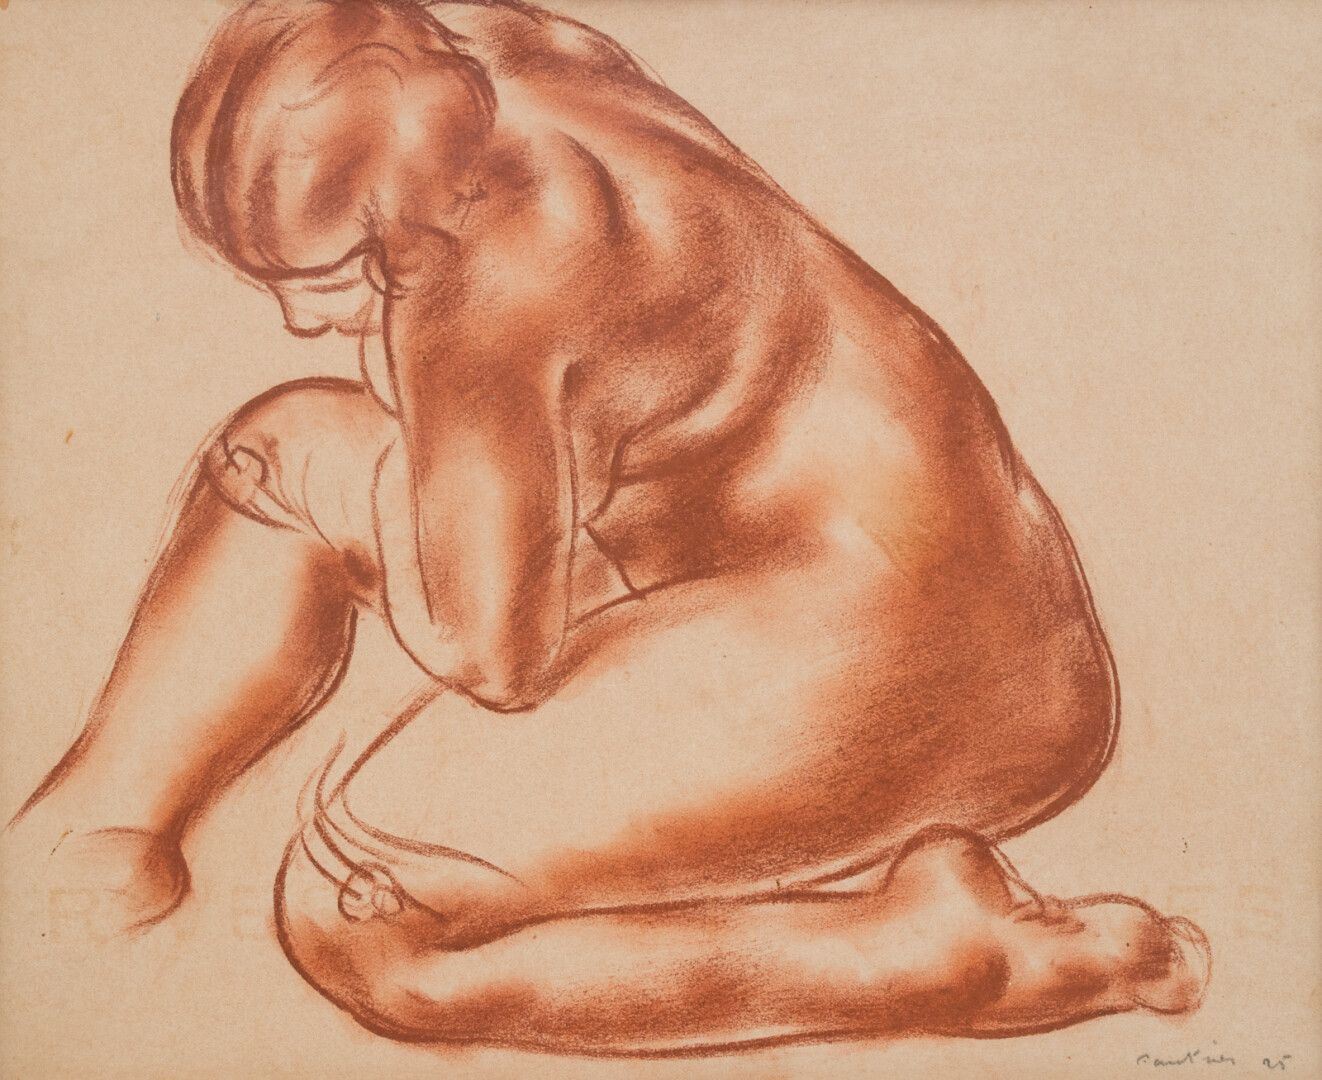 Null 让-福里埃 (1898-1964)

裸体

纸上桑格画，右下角有签名，日期为25日

22 x 27厘米。(左上角有小的撕裂)